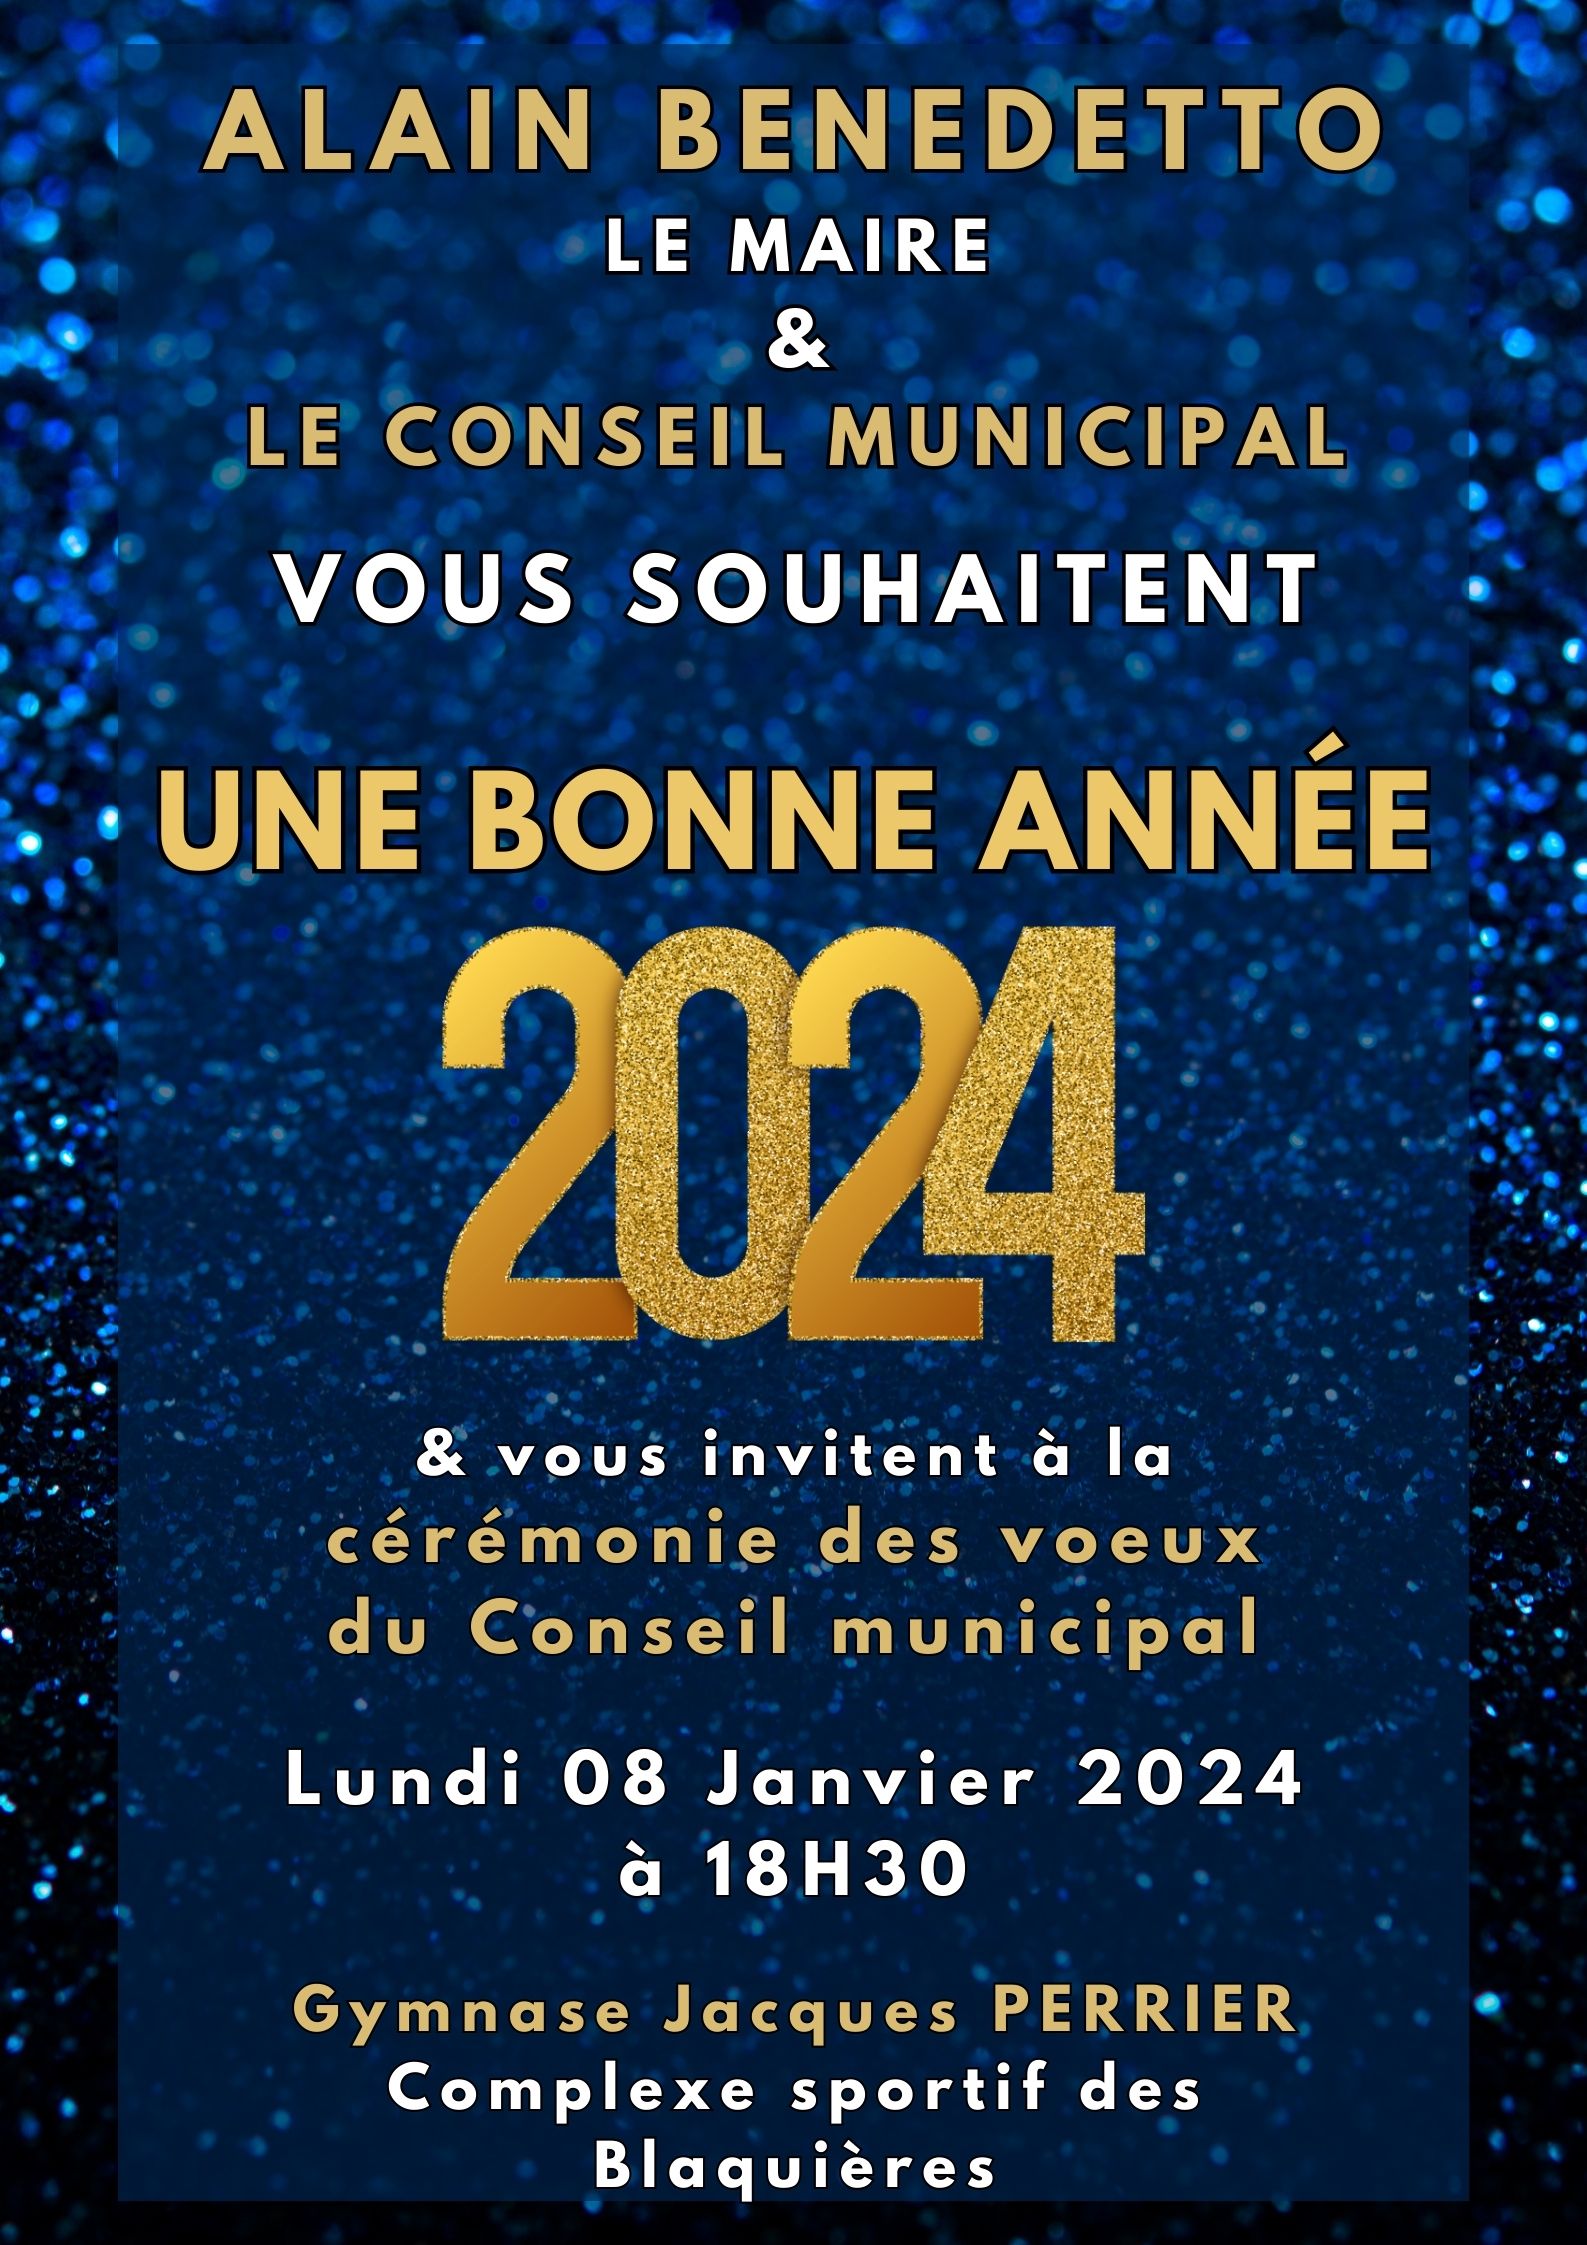 Lundi 08 janvier 2024 - Voeux du Maire et du Conseil municipal 